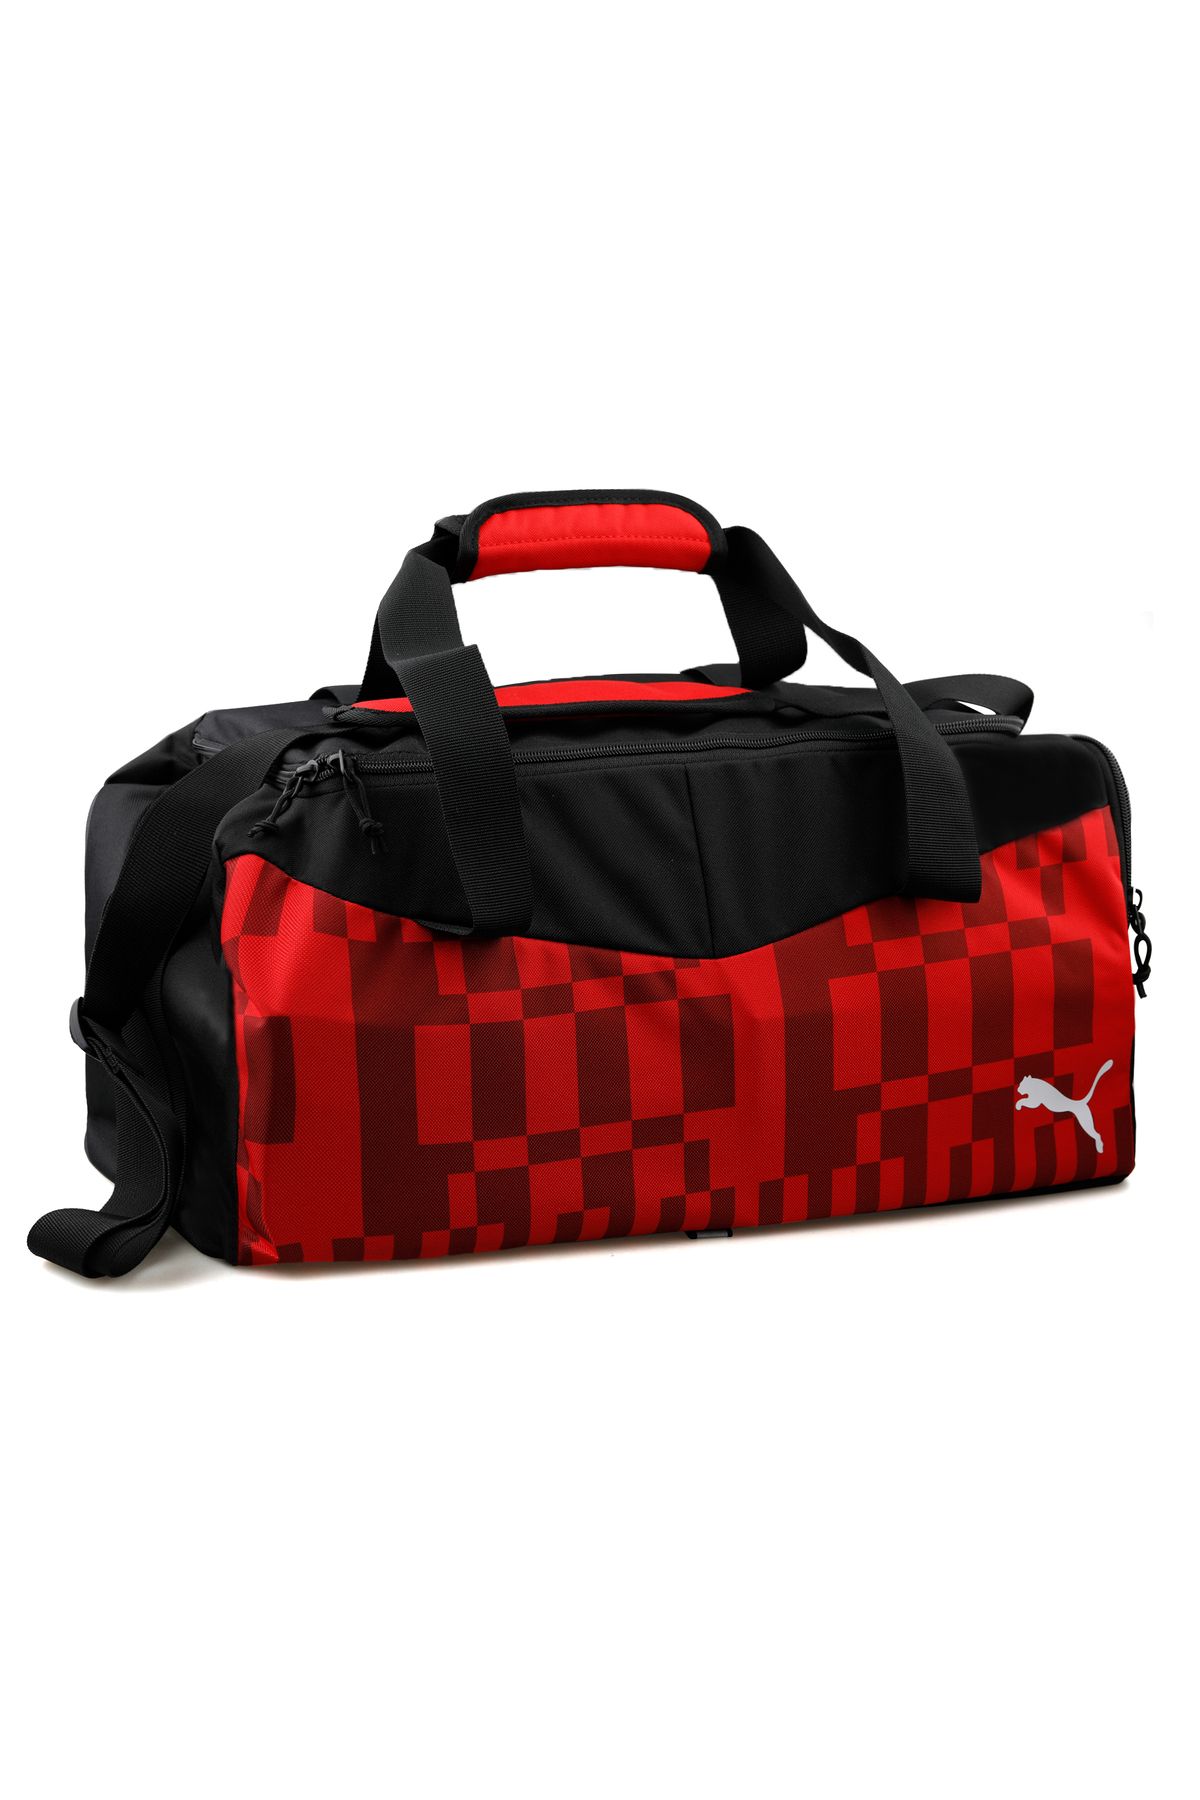 Puma Small Bag Spor Çantası 7991201 Kırmızı